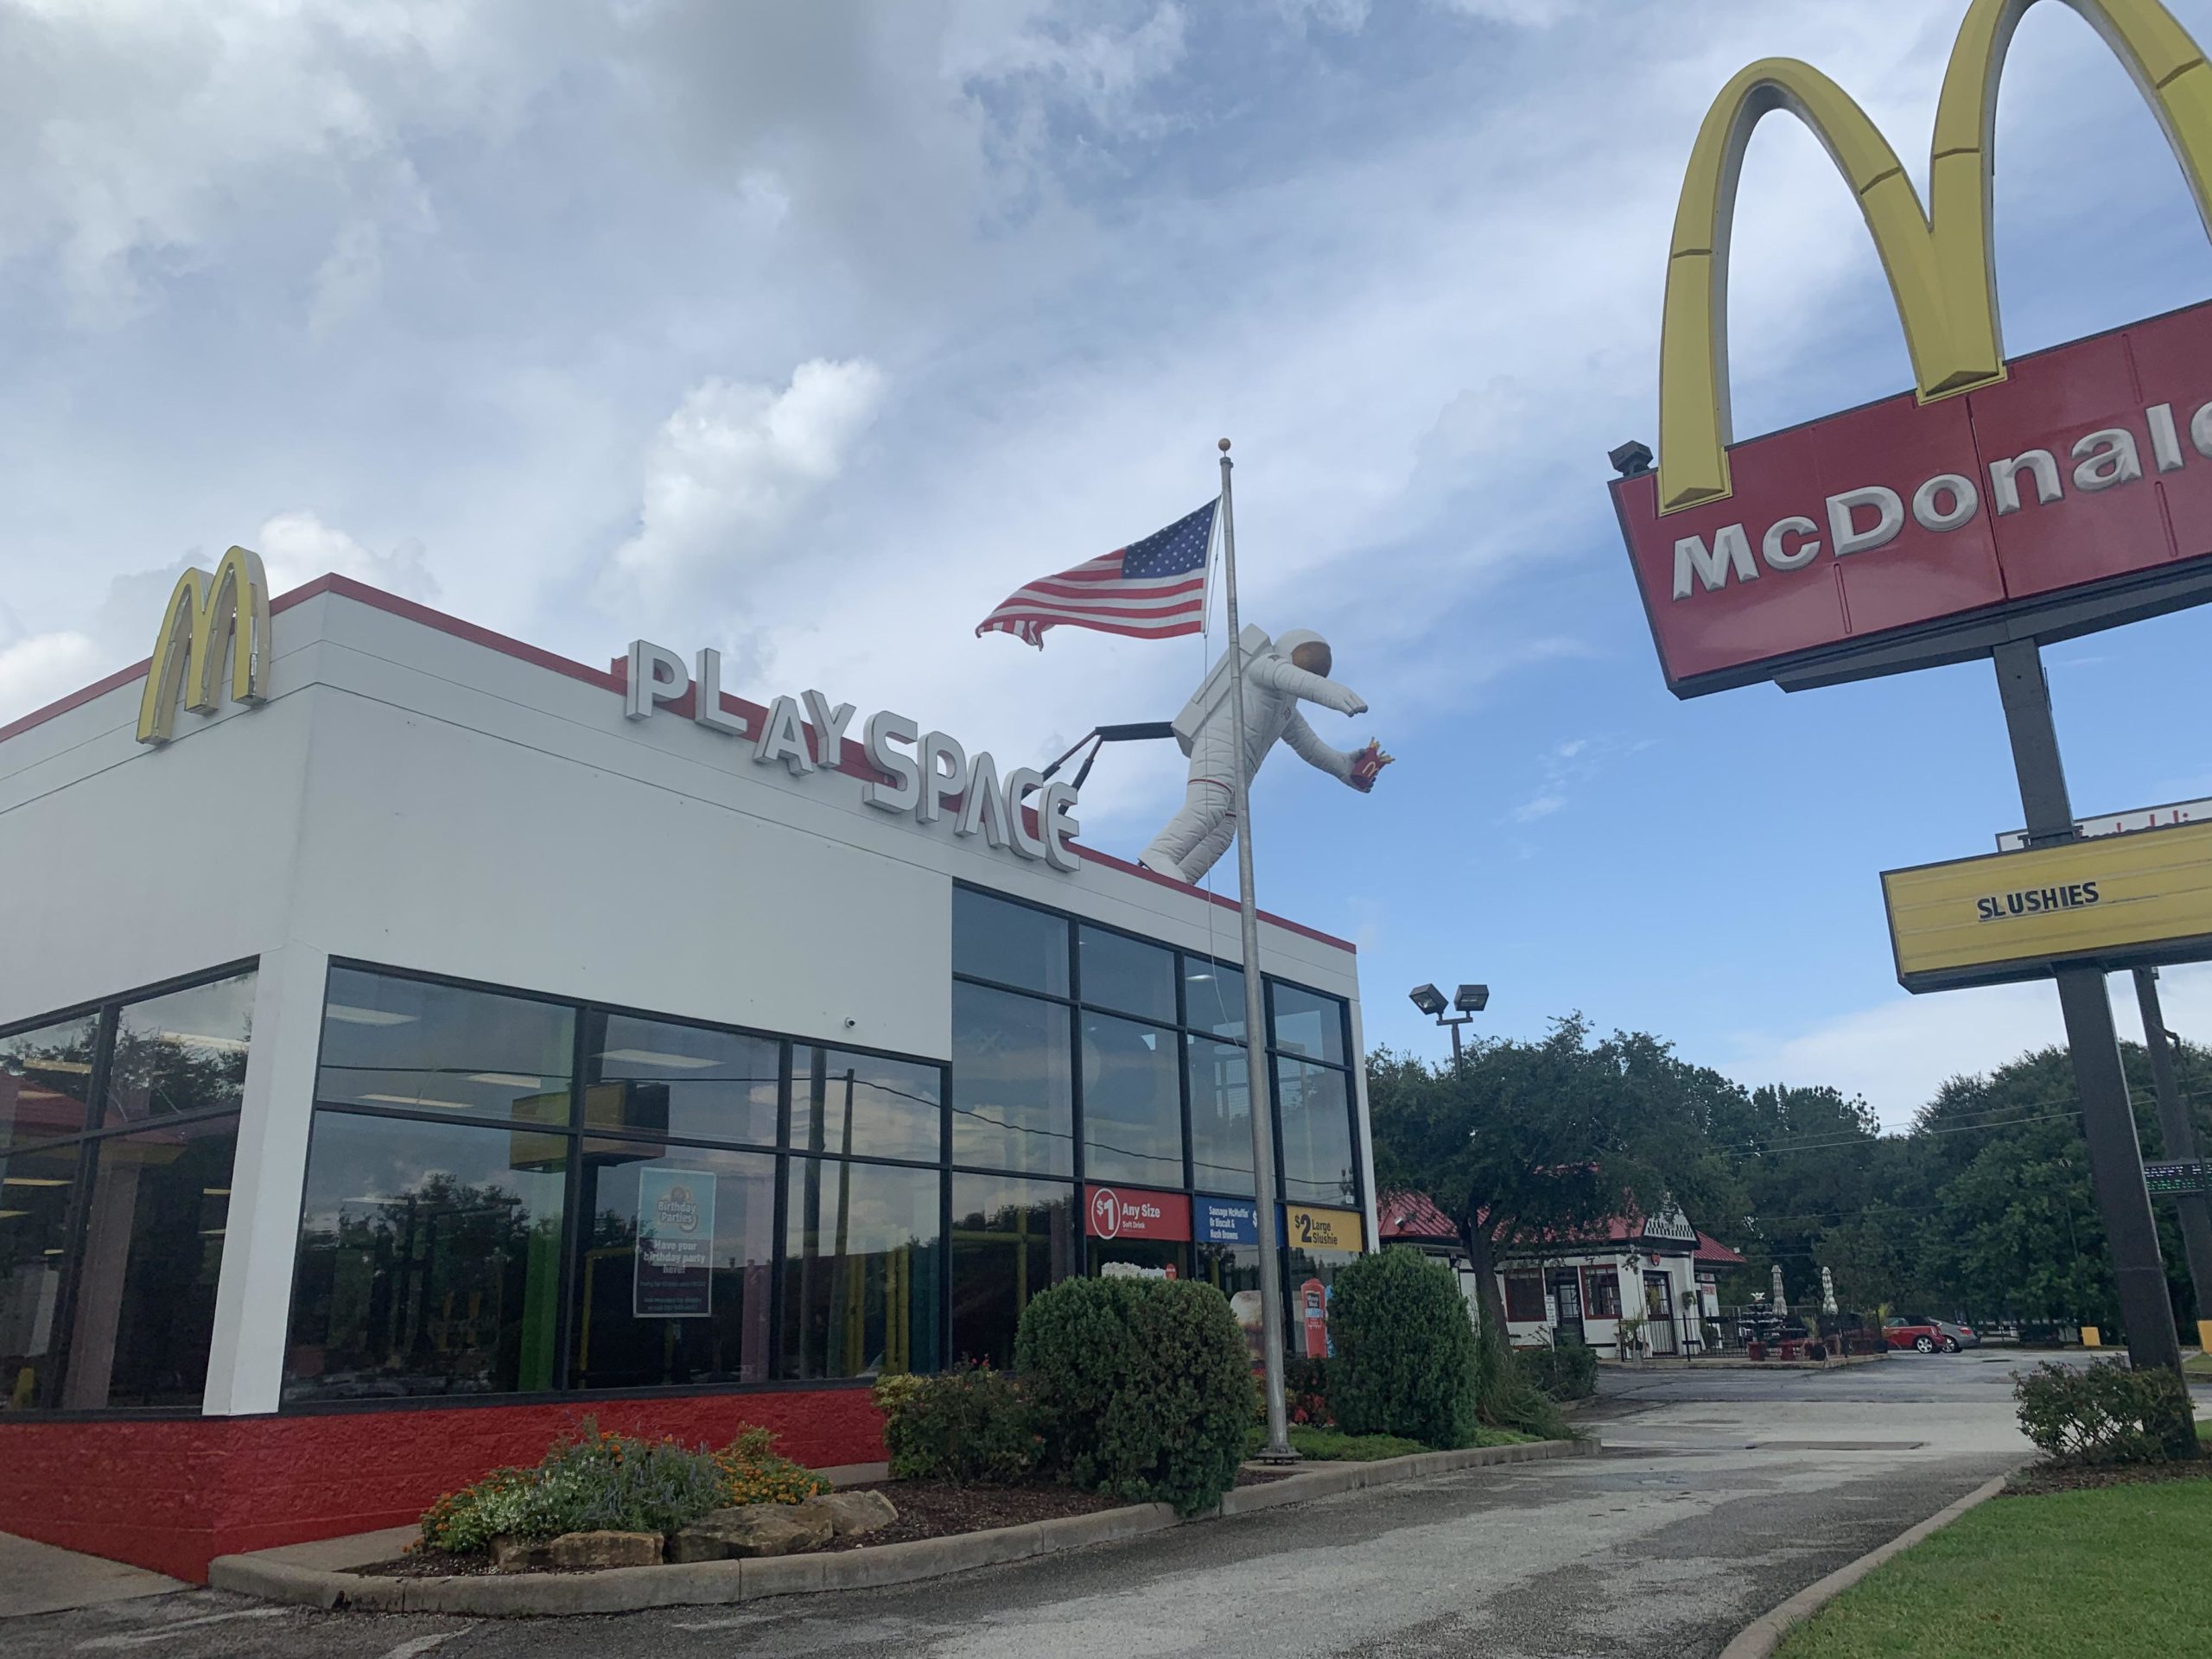 McDonalds+next+to+the+NASA+Johnson+Space+Center+in+Houston%2C+Texas